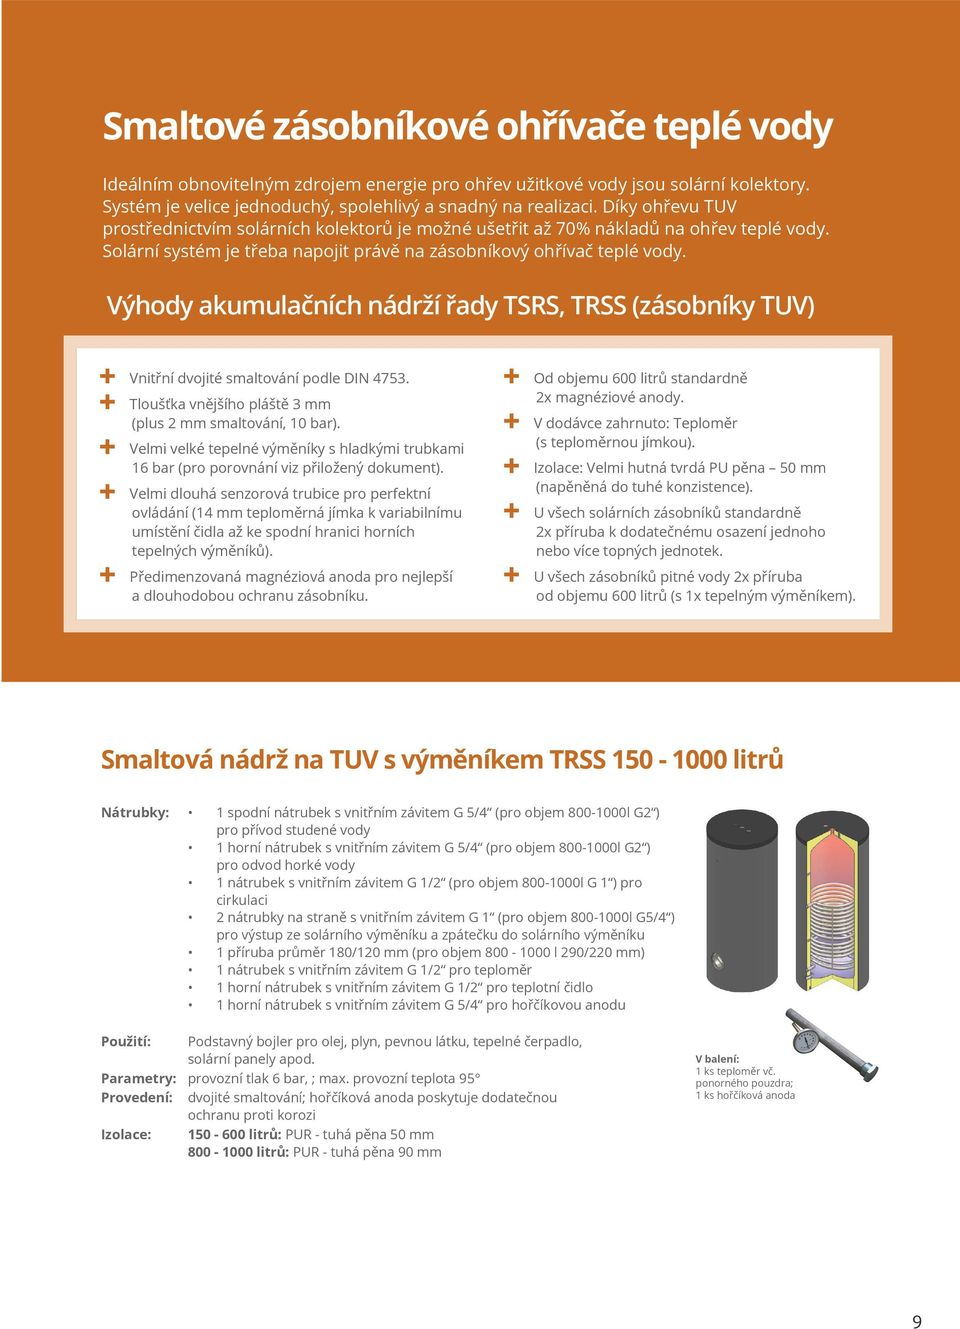 Výhody akumulačních nádrží řady TSRS, TRSS (zásobníky TUV) Vnitřní dvojité smaltování podle DIN 4753. Tloušťka vnějšího pláště 3 mm (plus 2 mm smaltování, 10 bar).